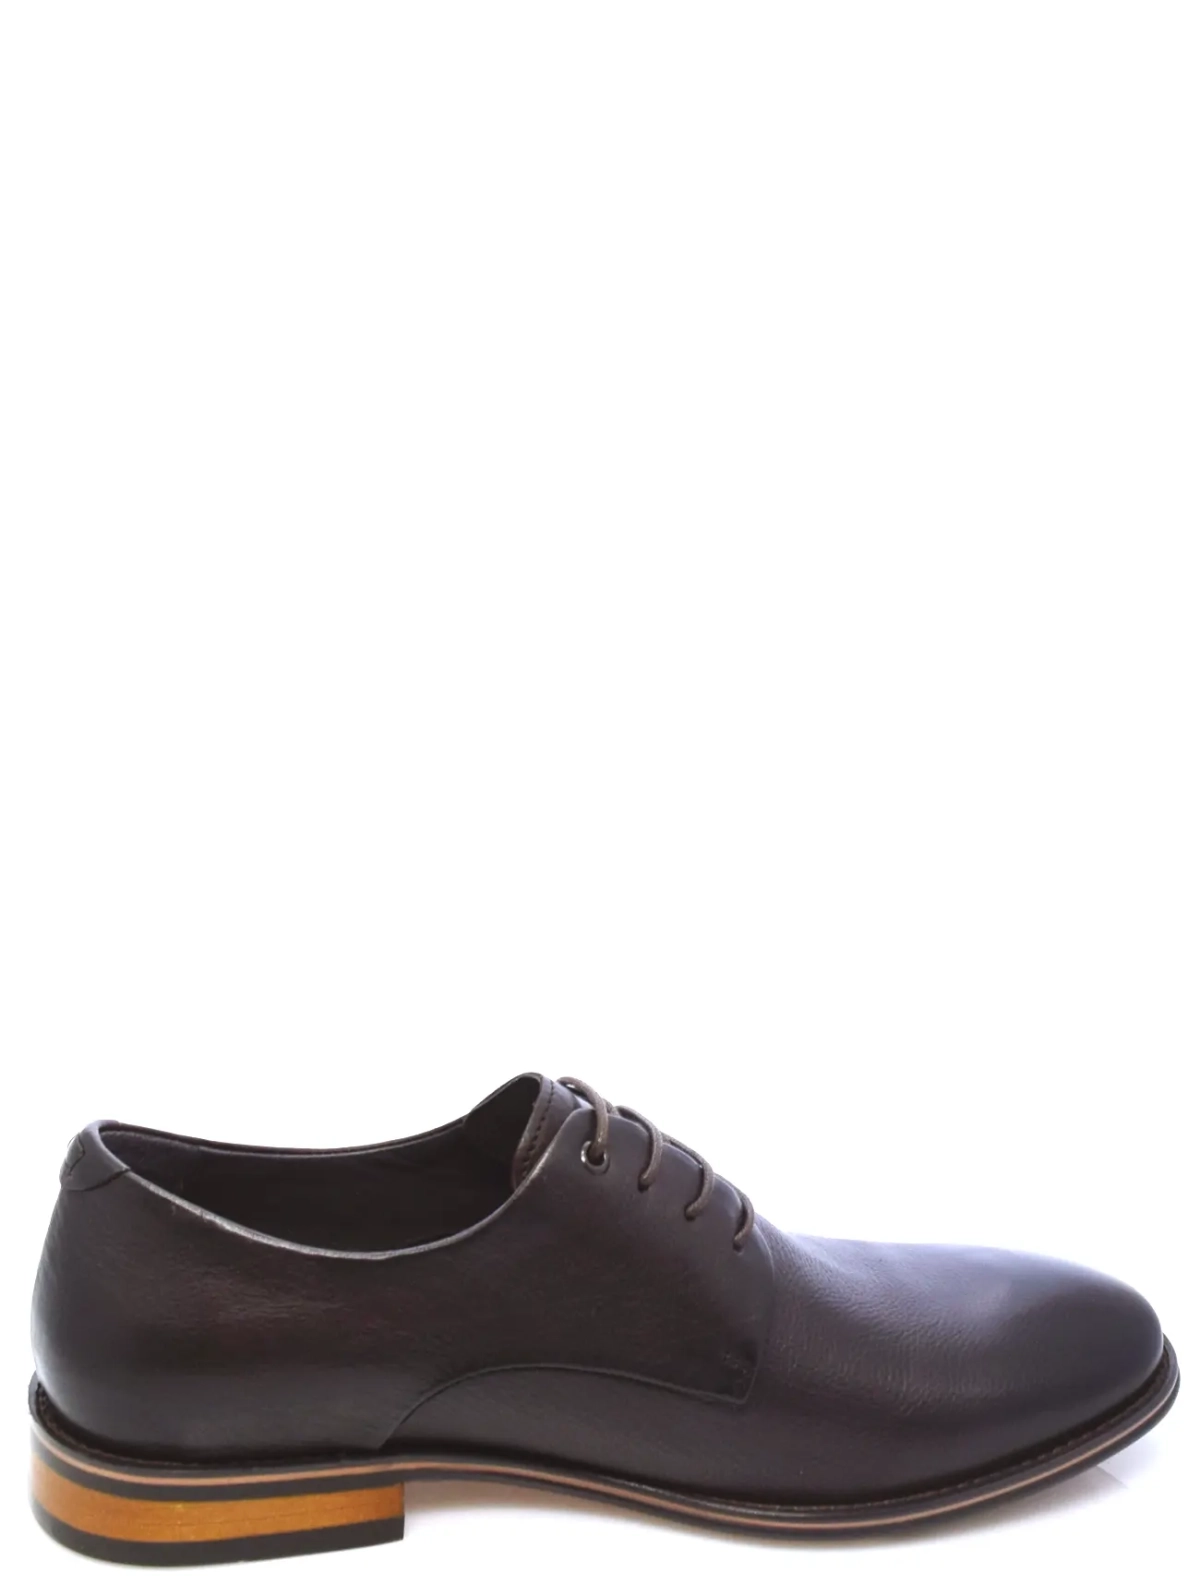 Roscote A223-703H-10G-T4711 мужские туфли